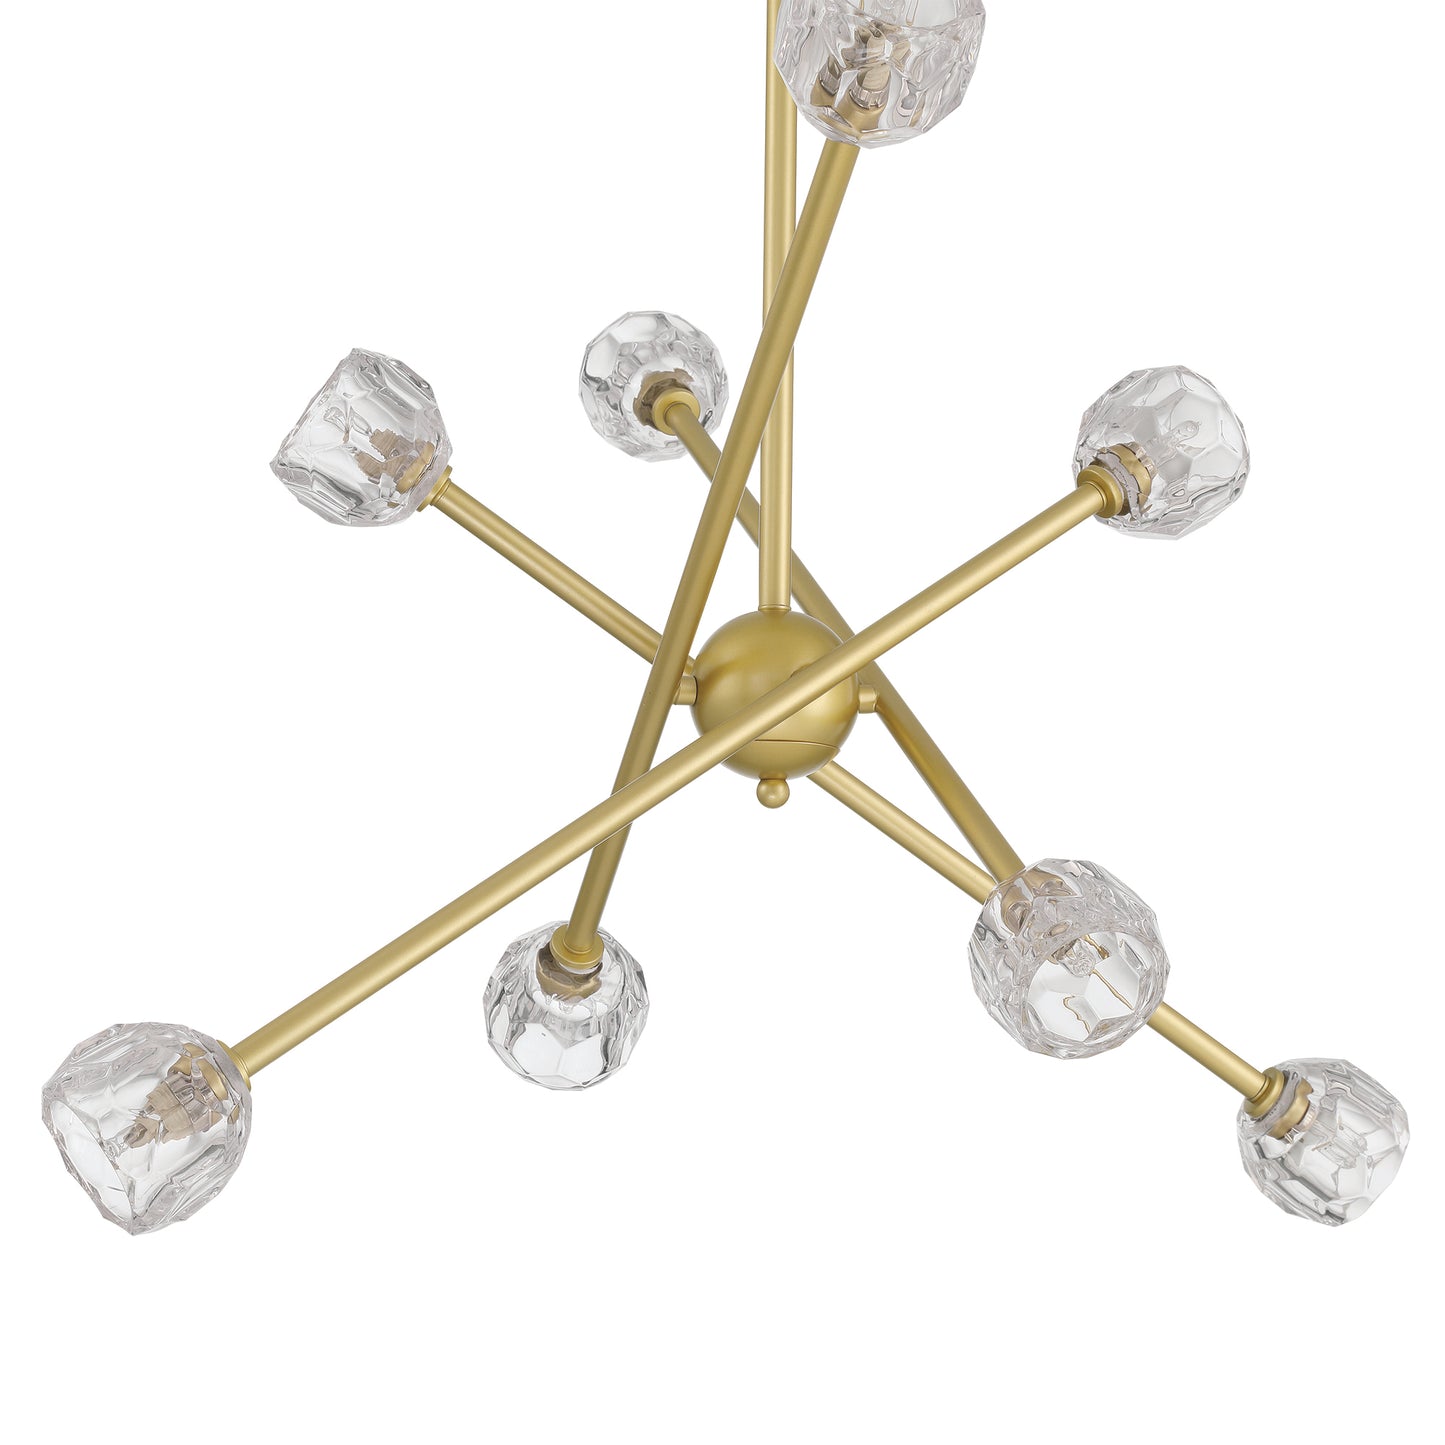 8 light sputnik glass chandelier (7) by ACROMA